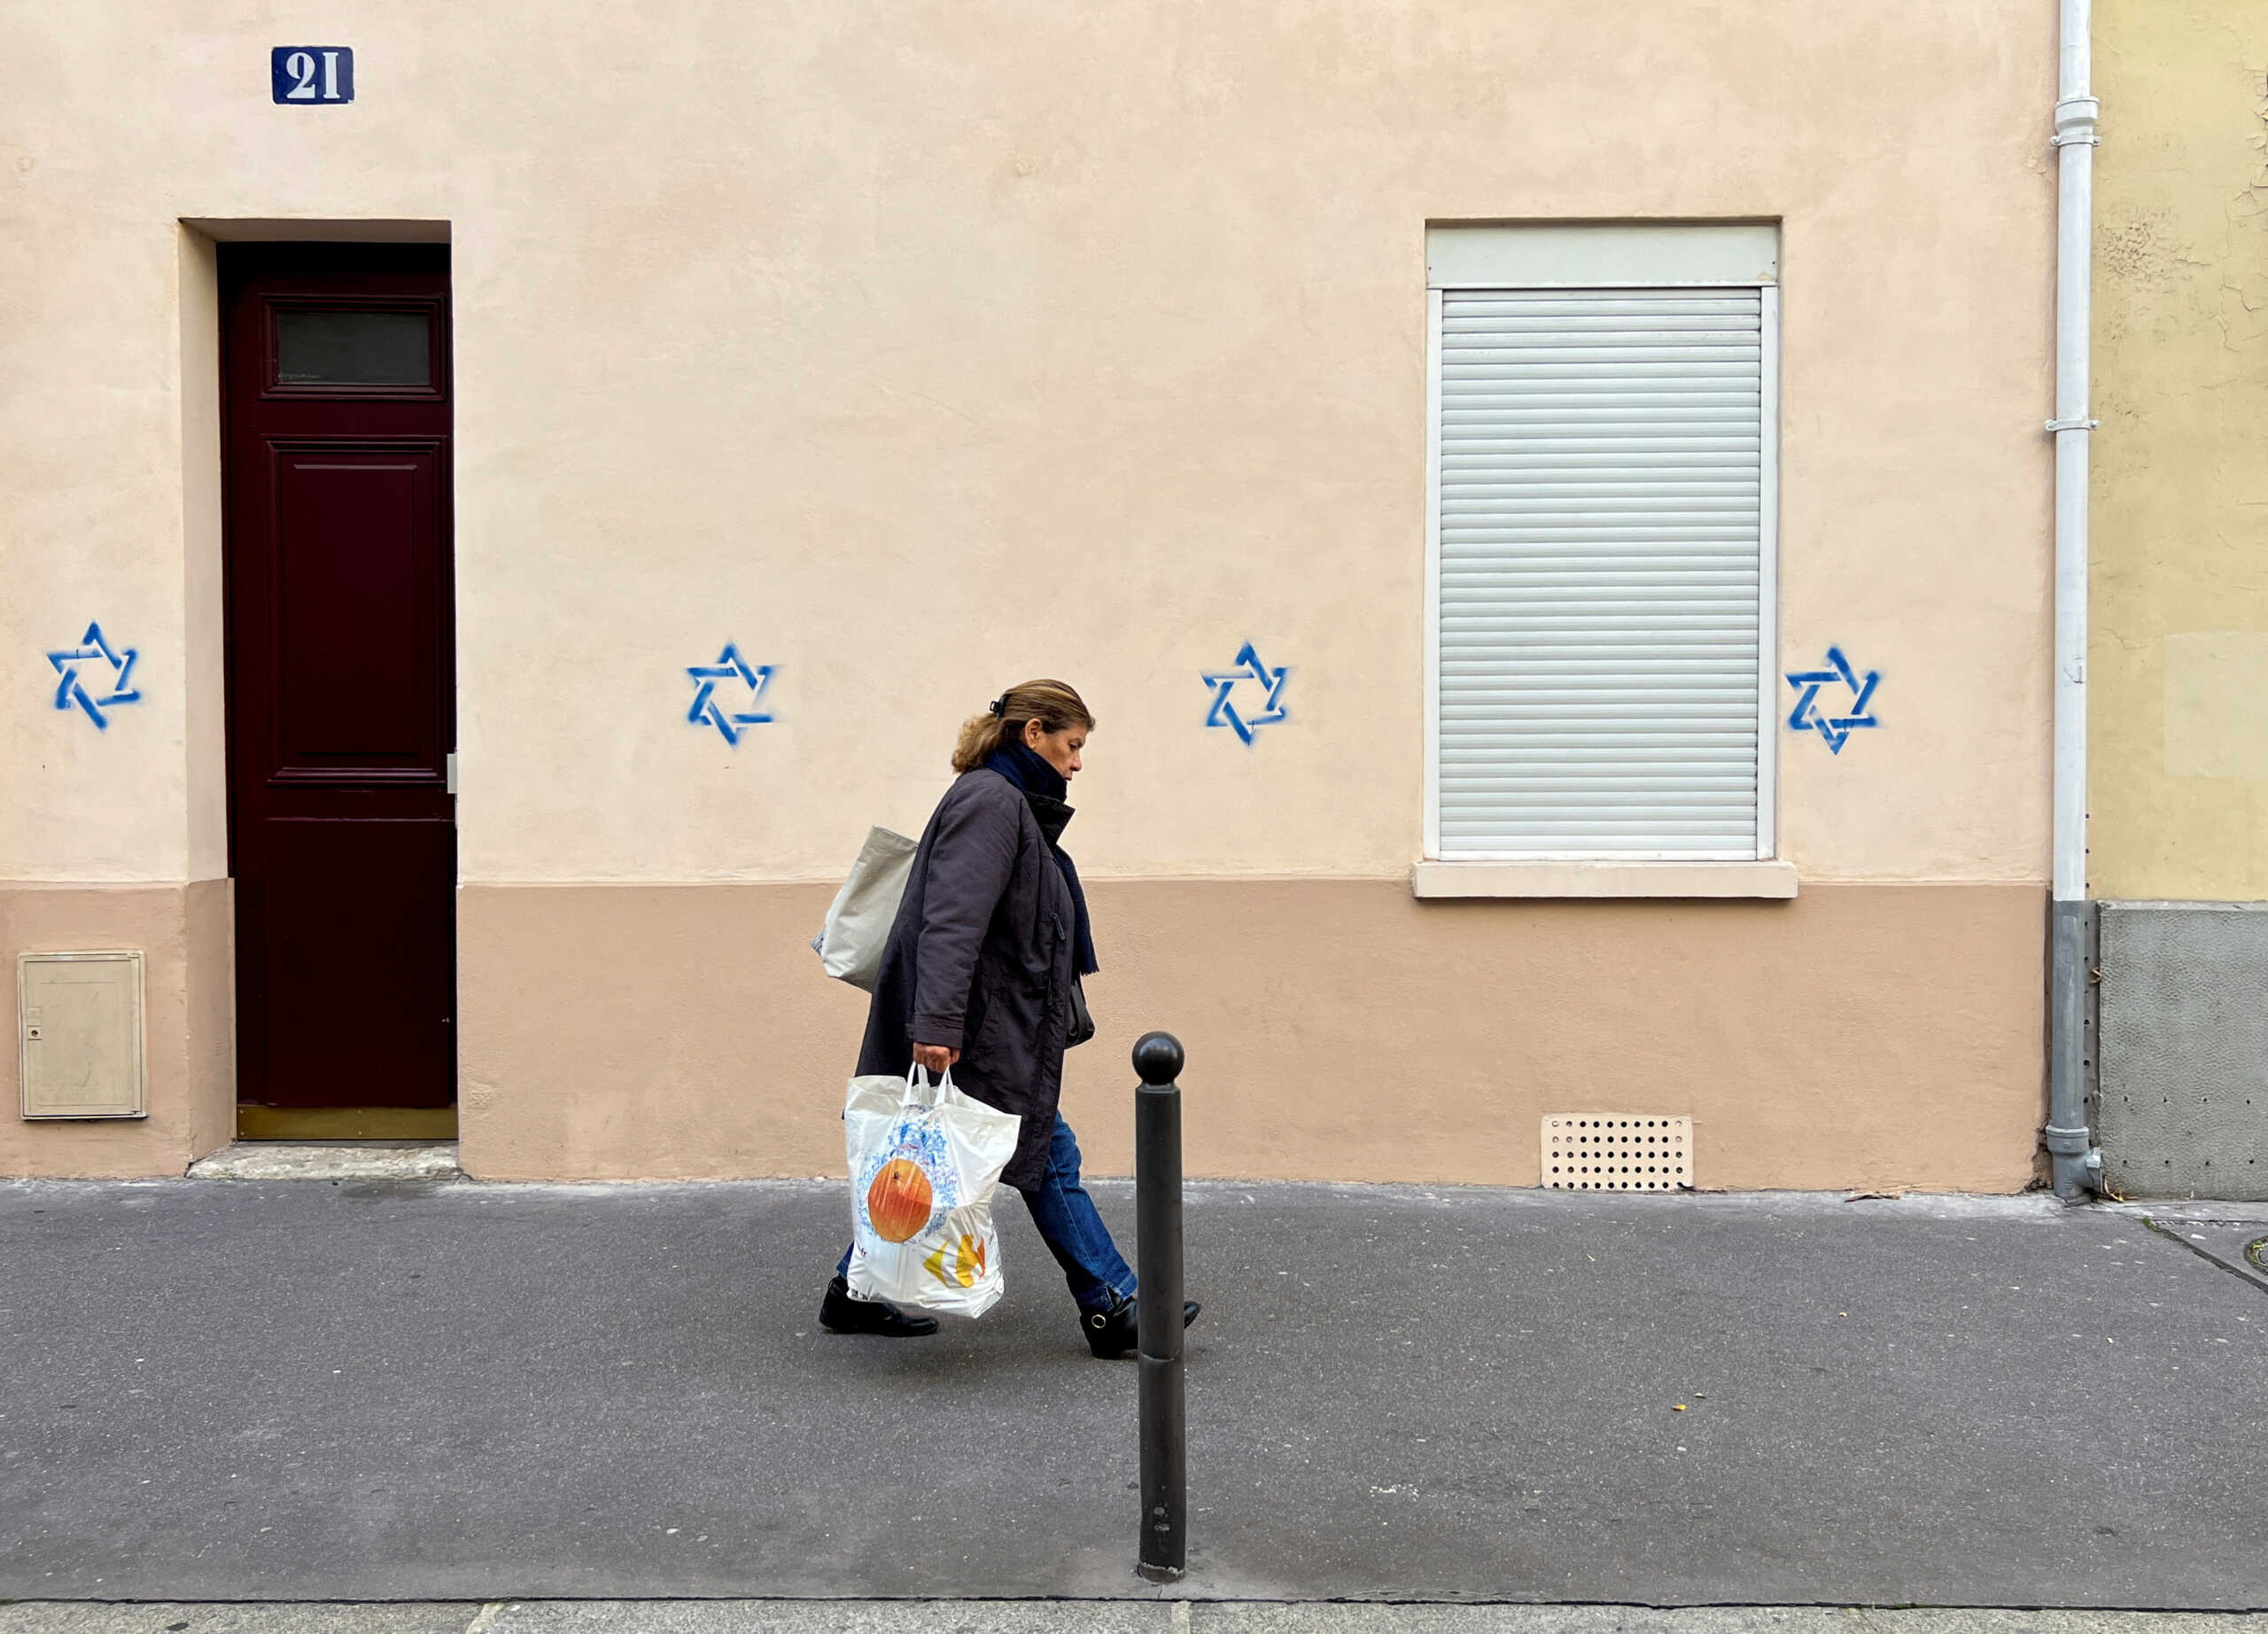 Γαλλία: Εισαγγελική παρέμβαση για τα Άστρα του Δαβίδ που ζωγράφισαν άγνωστοι σε σπίτια Εβραίων